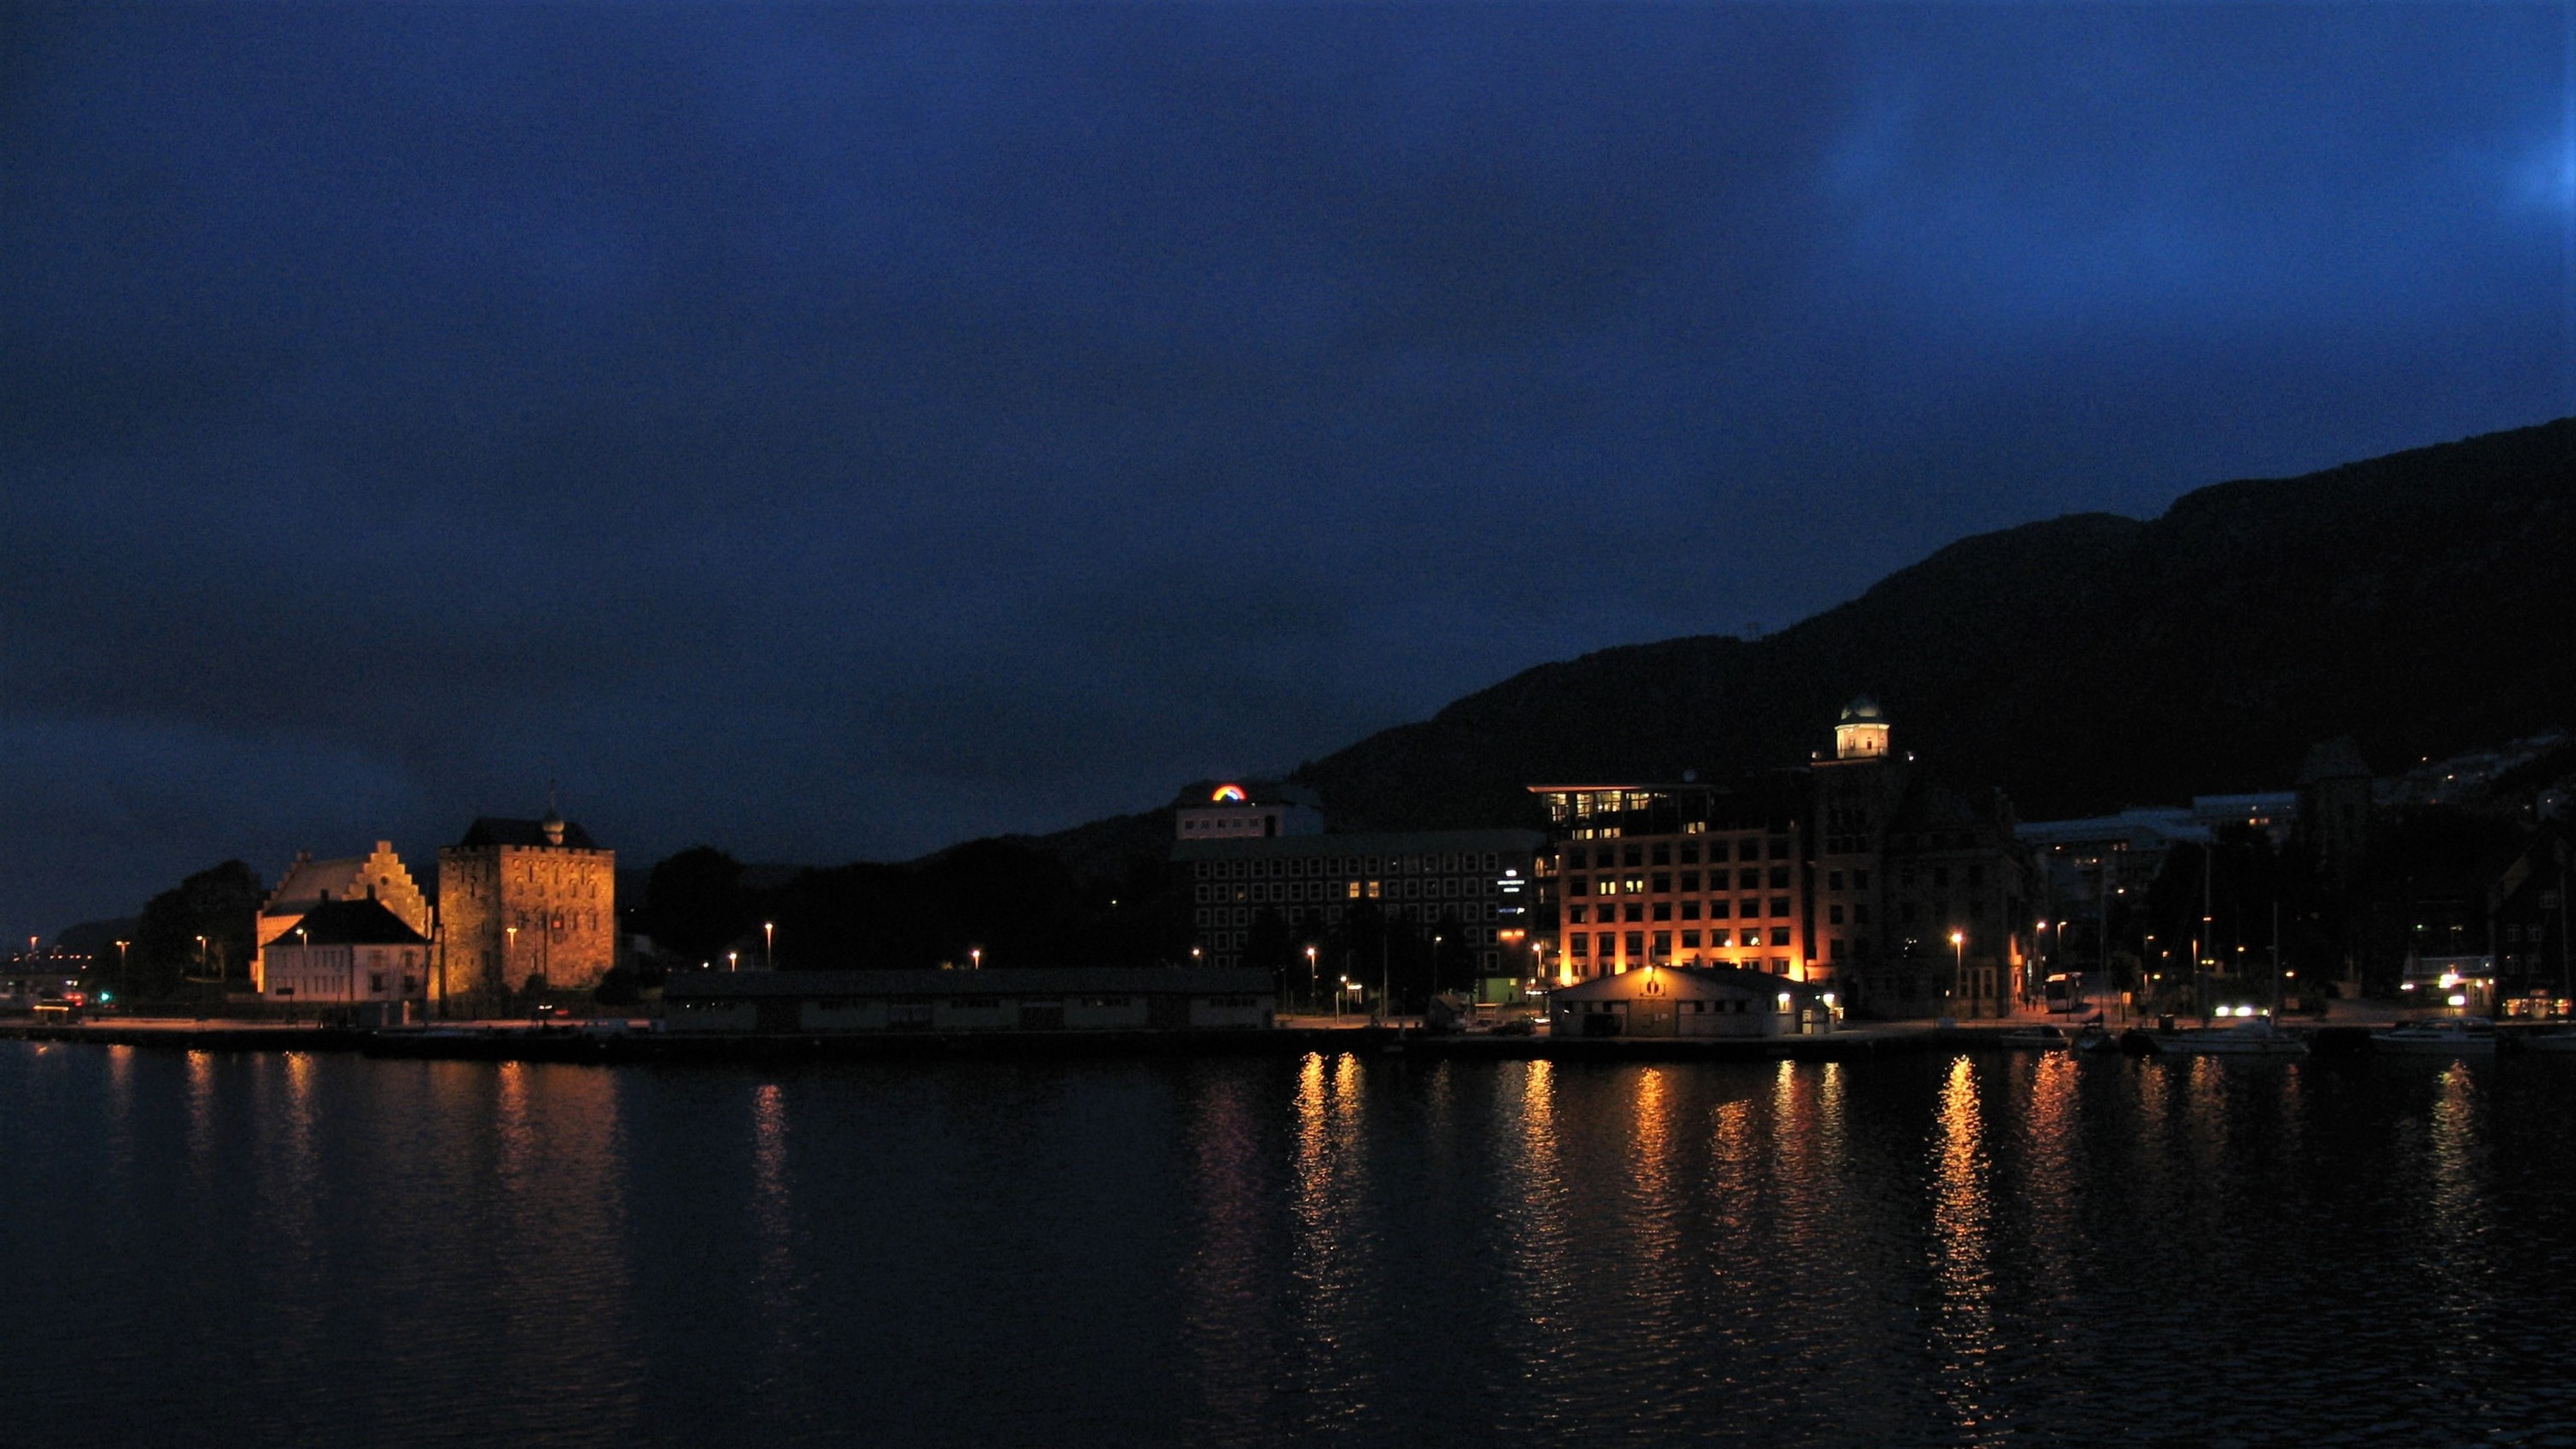 am 10.07.2005 - vor genau 15 Jahren - um Mitternacht in Bergen